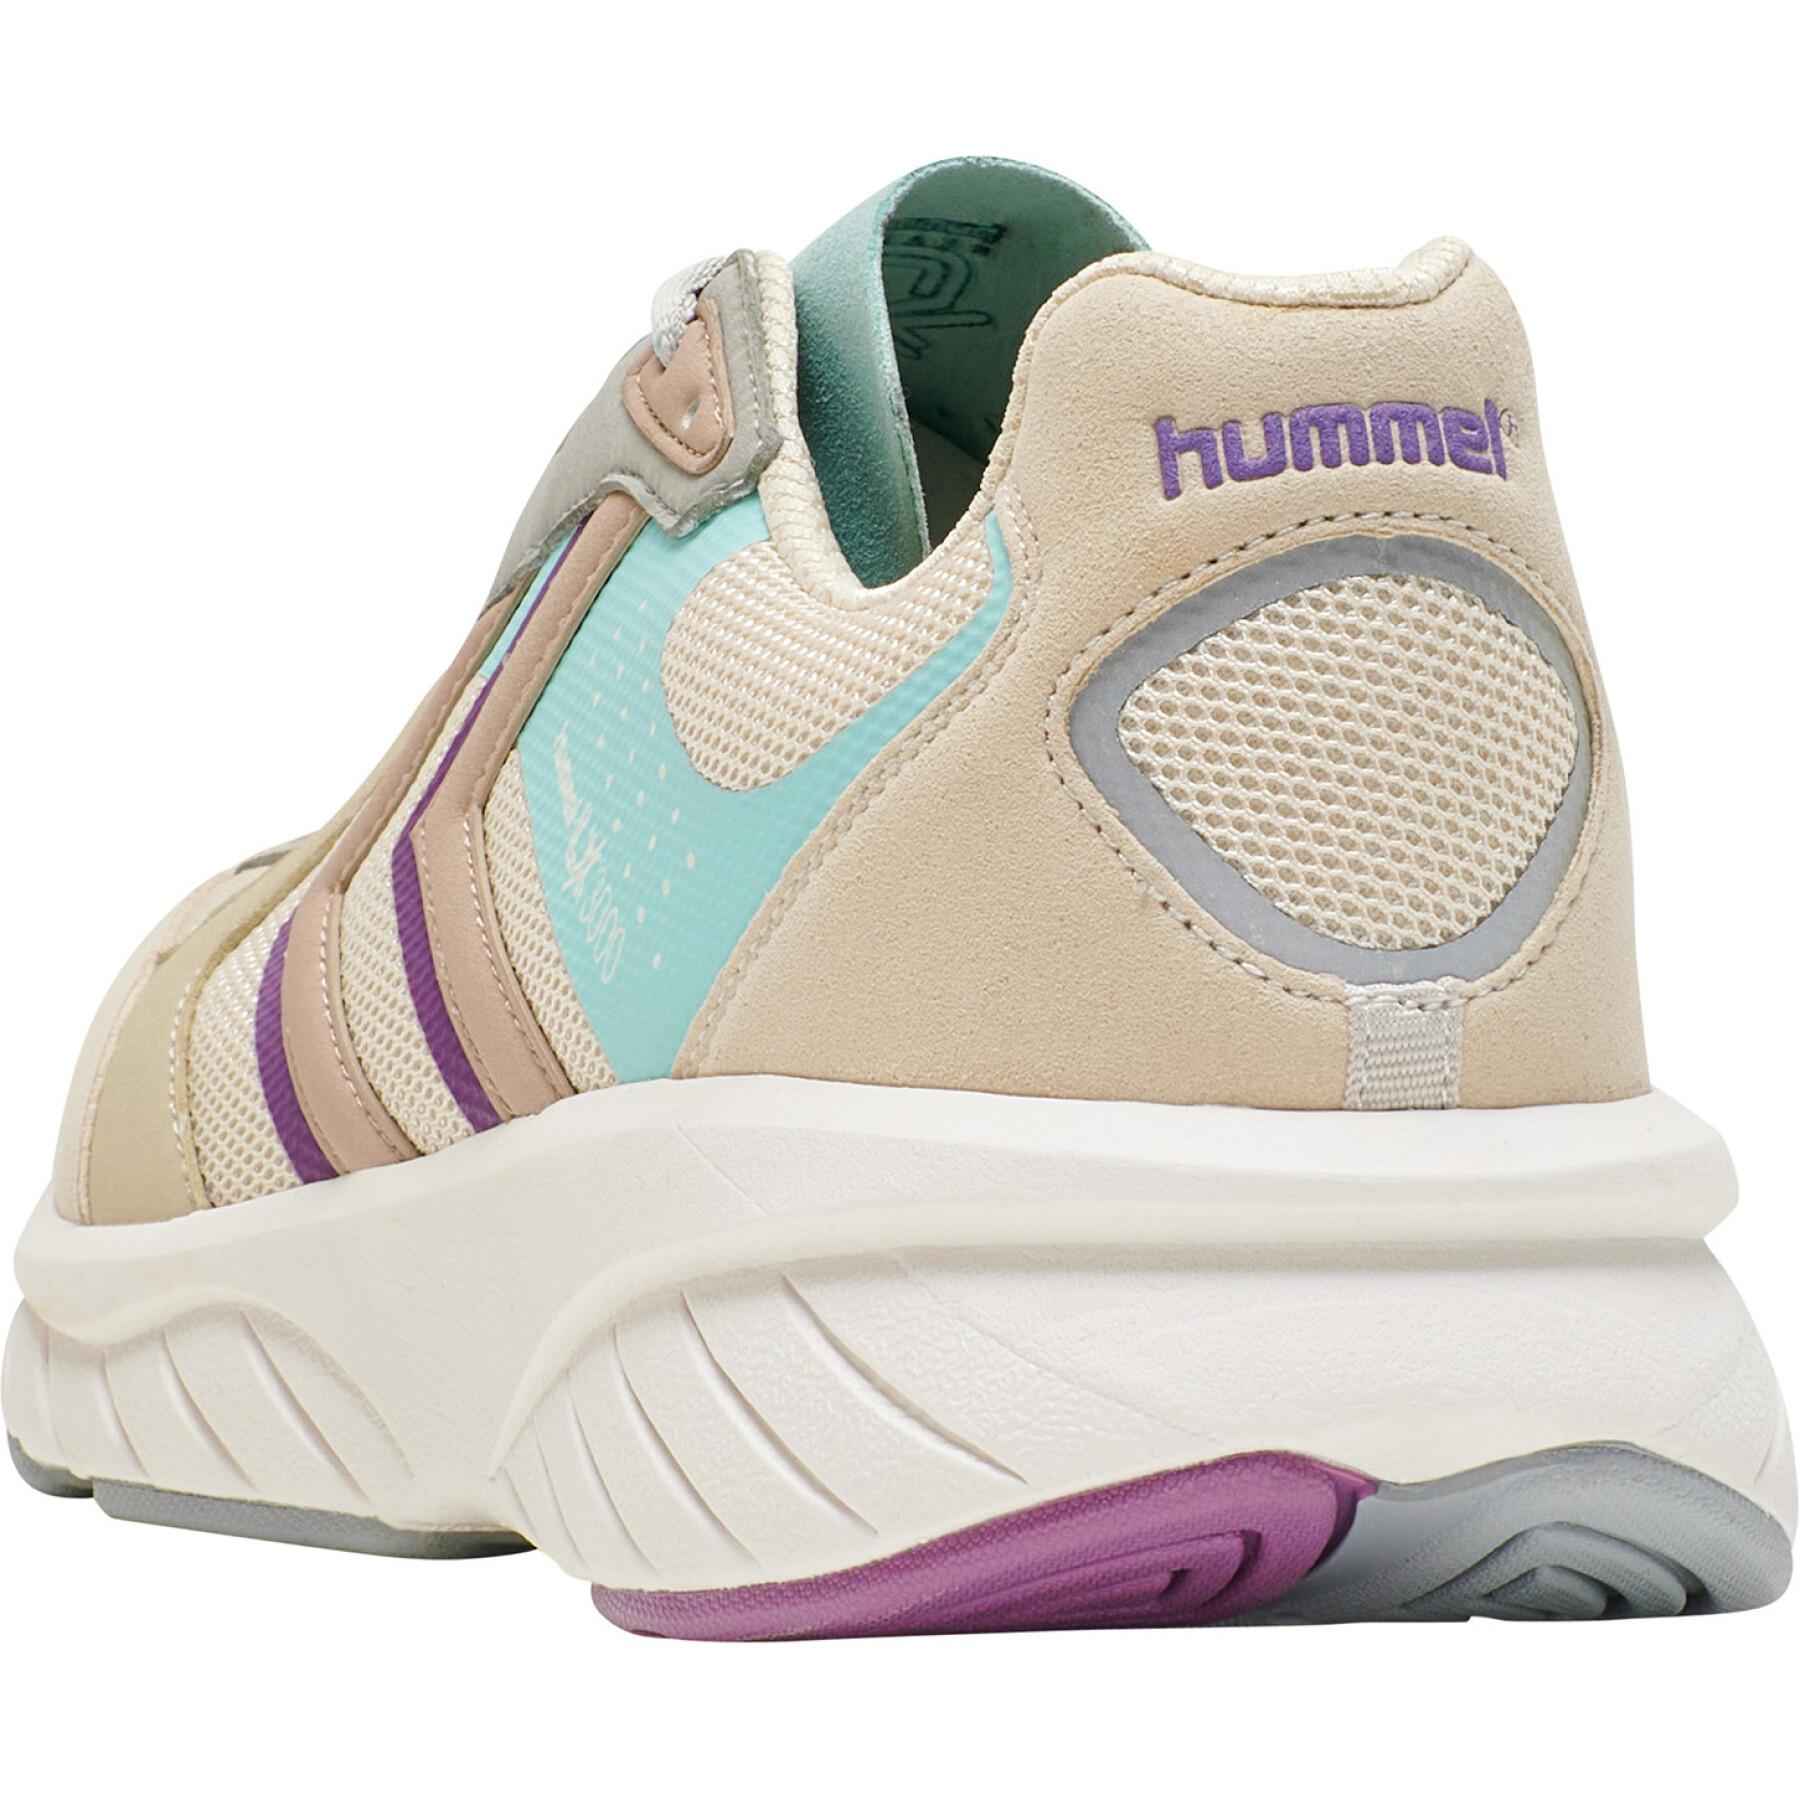 Schuhe Hummel reach LX 3000